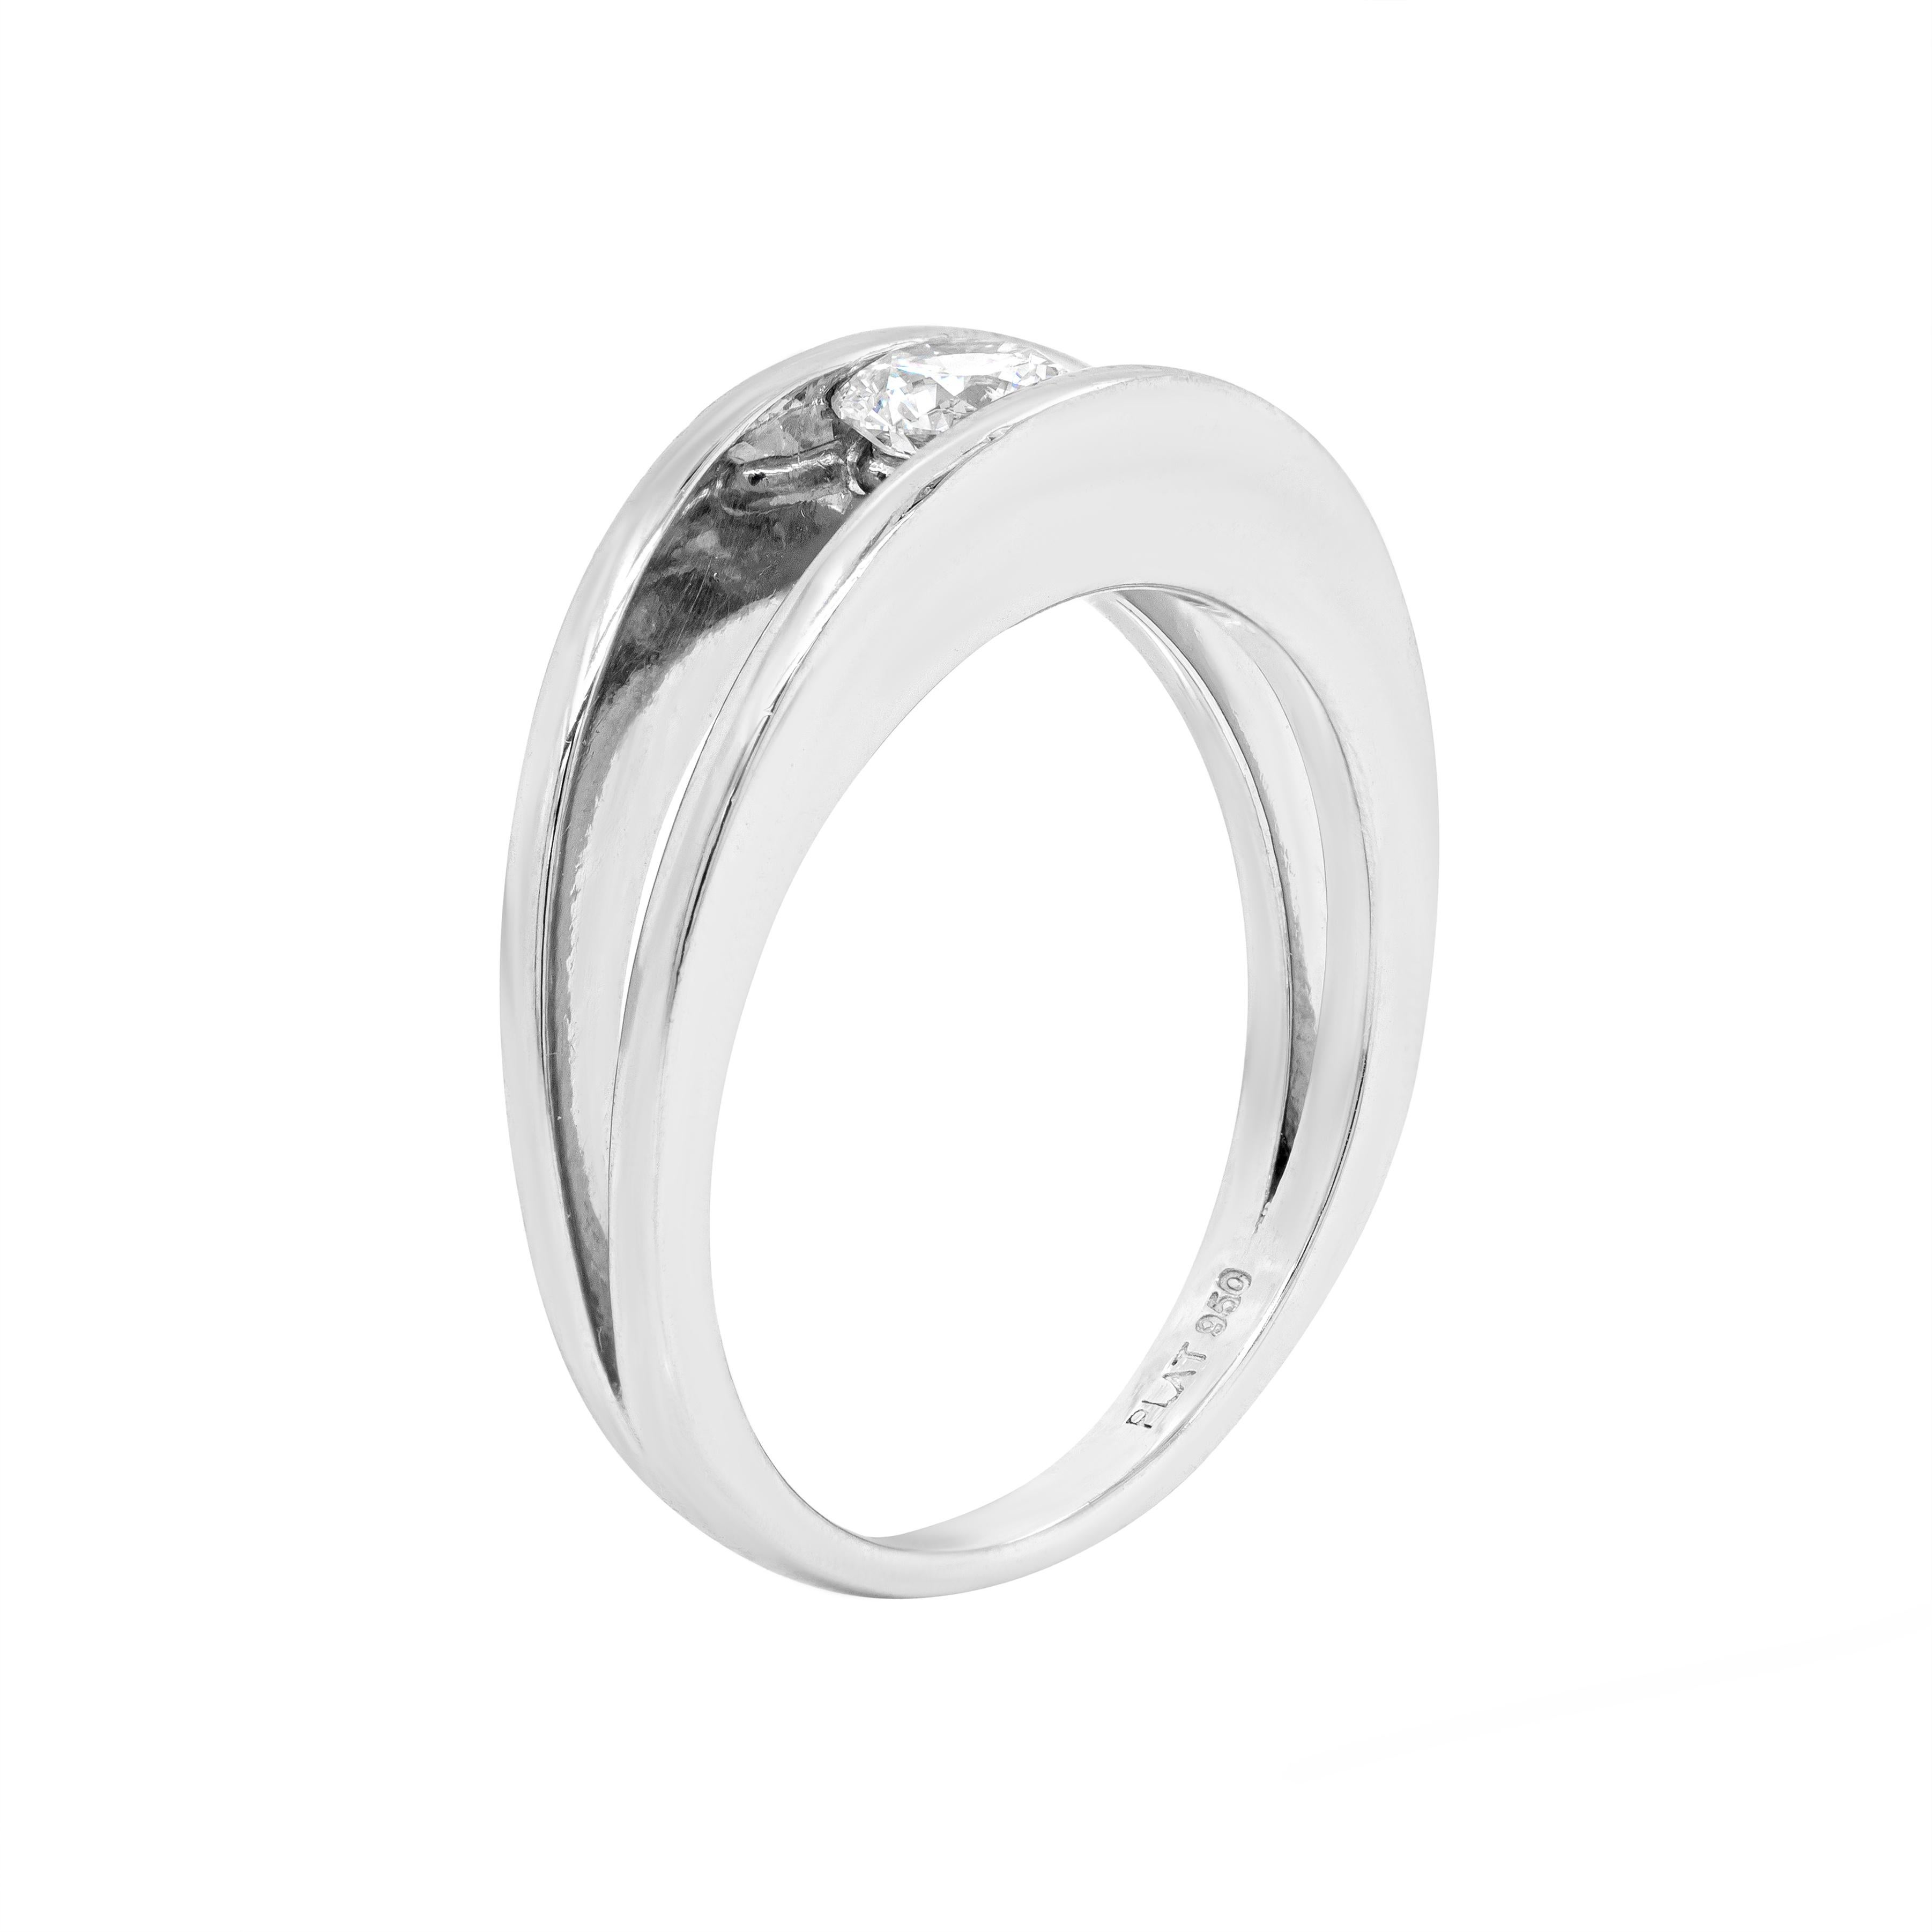 Minimaliste, mais d'une conception exquise, cette bague de fiançailles en platine présente un magnifique diamant rond de 0,35 carat de taille brillant, certifié de couleur F et de pureté SI2, serti en tension dans un anneau fendu en platine.